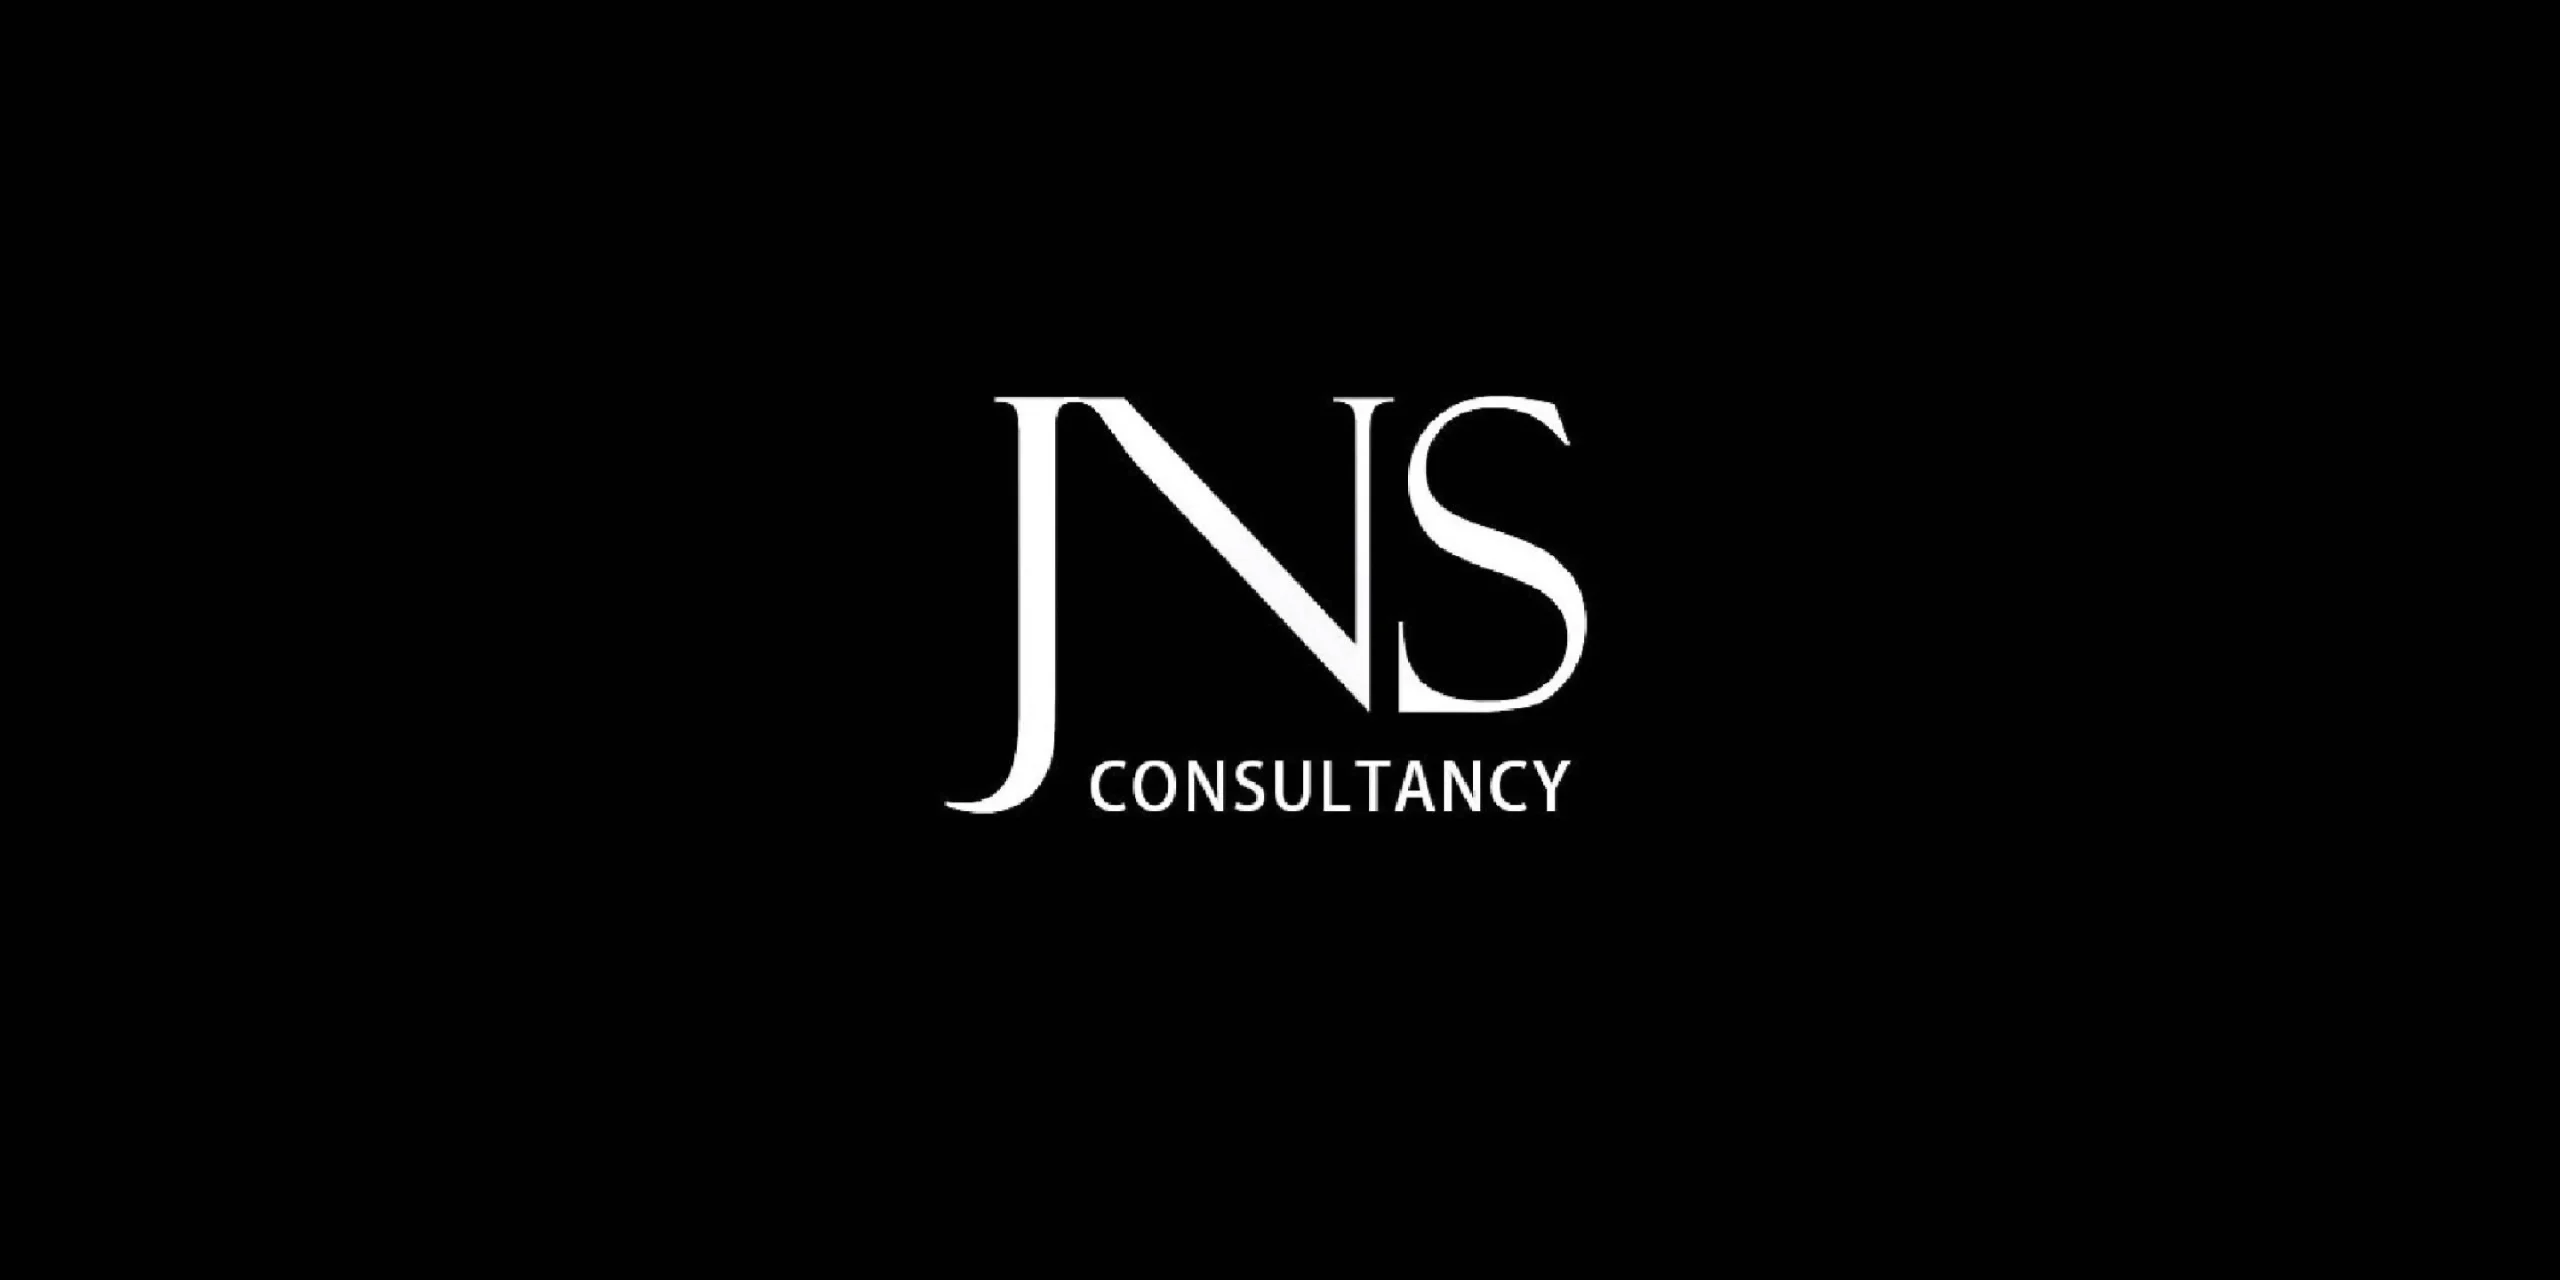 JNS Consultancy